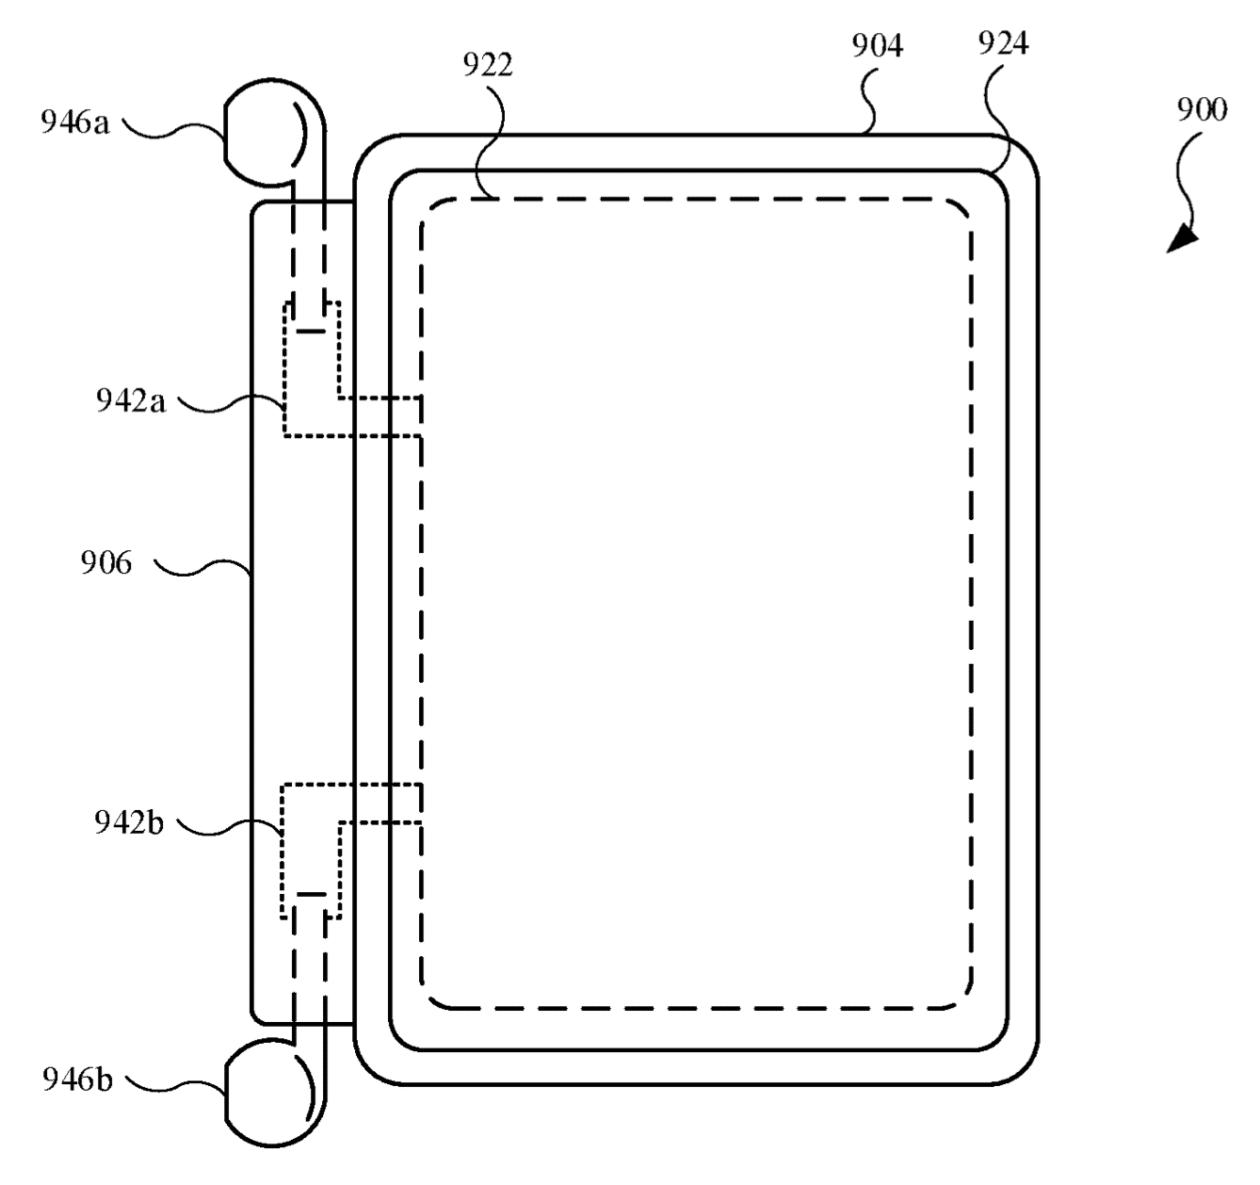 Patente del estuche del cargador AirPods para iPhone